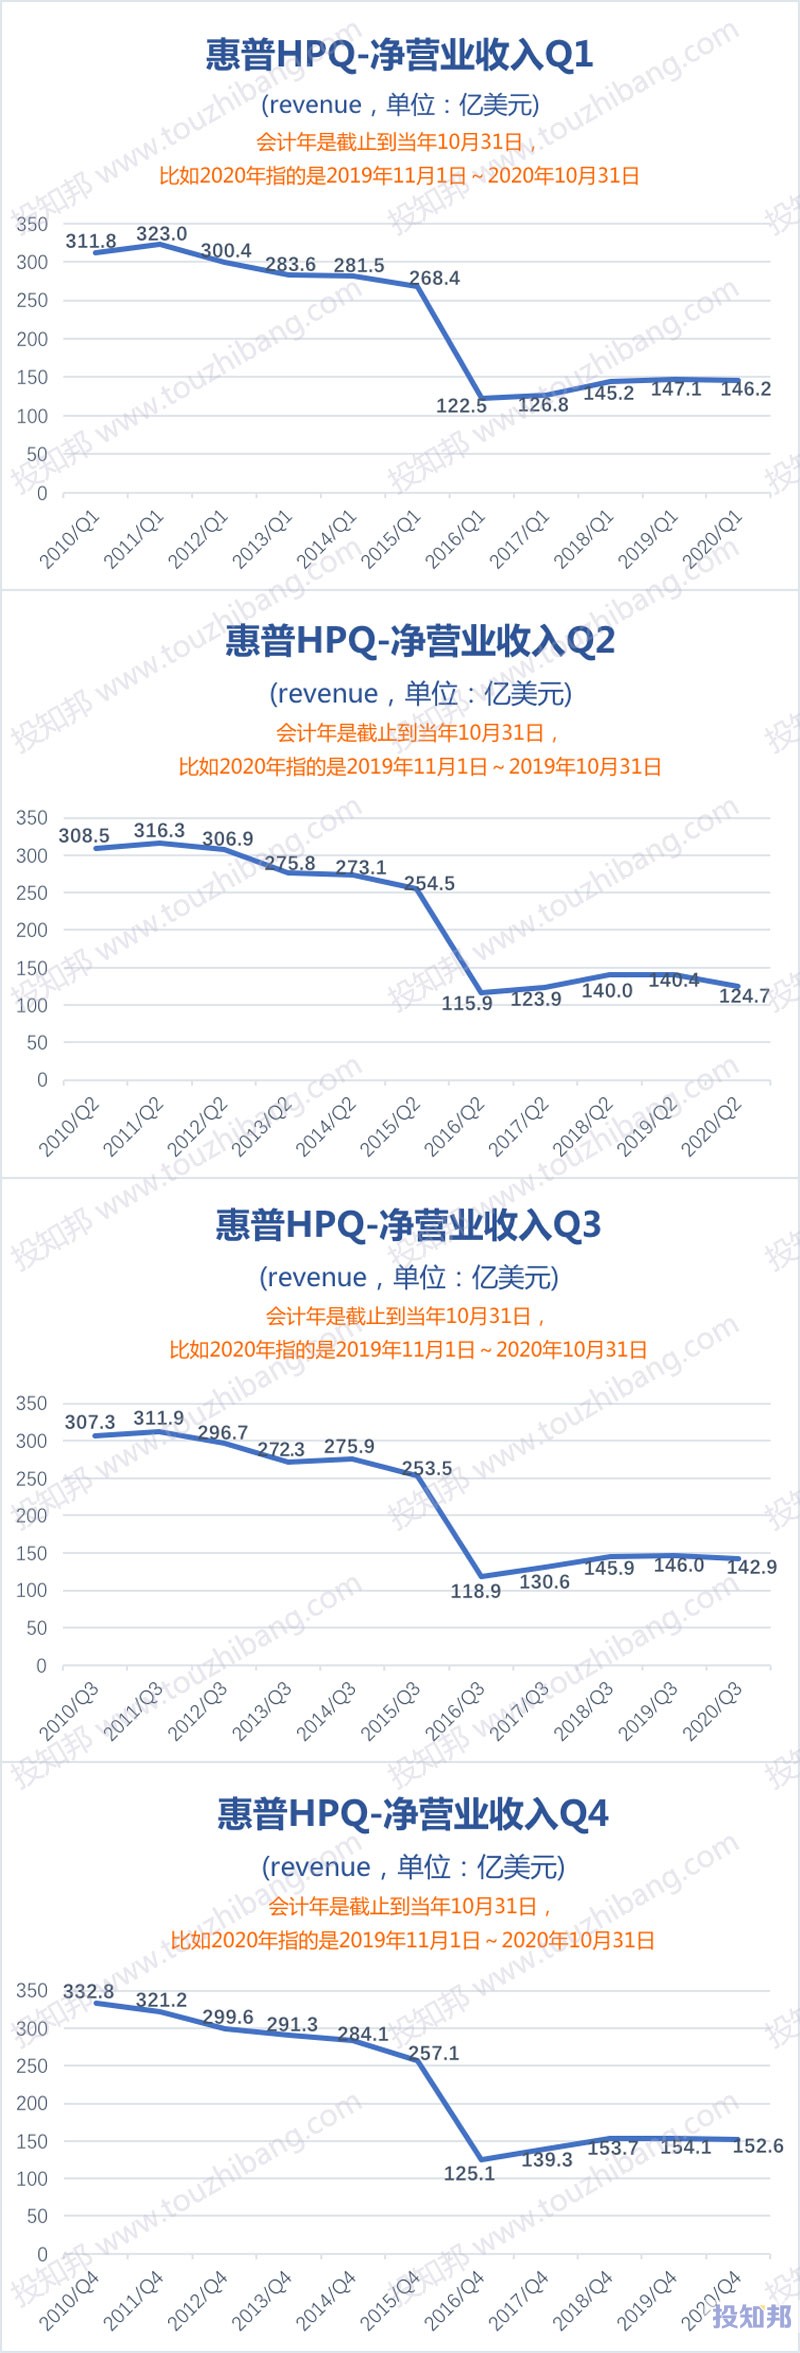 图解惠普(HPQ)财报数据(2010年～2020财报年，更新)